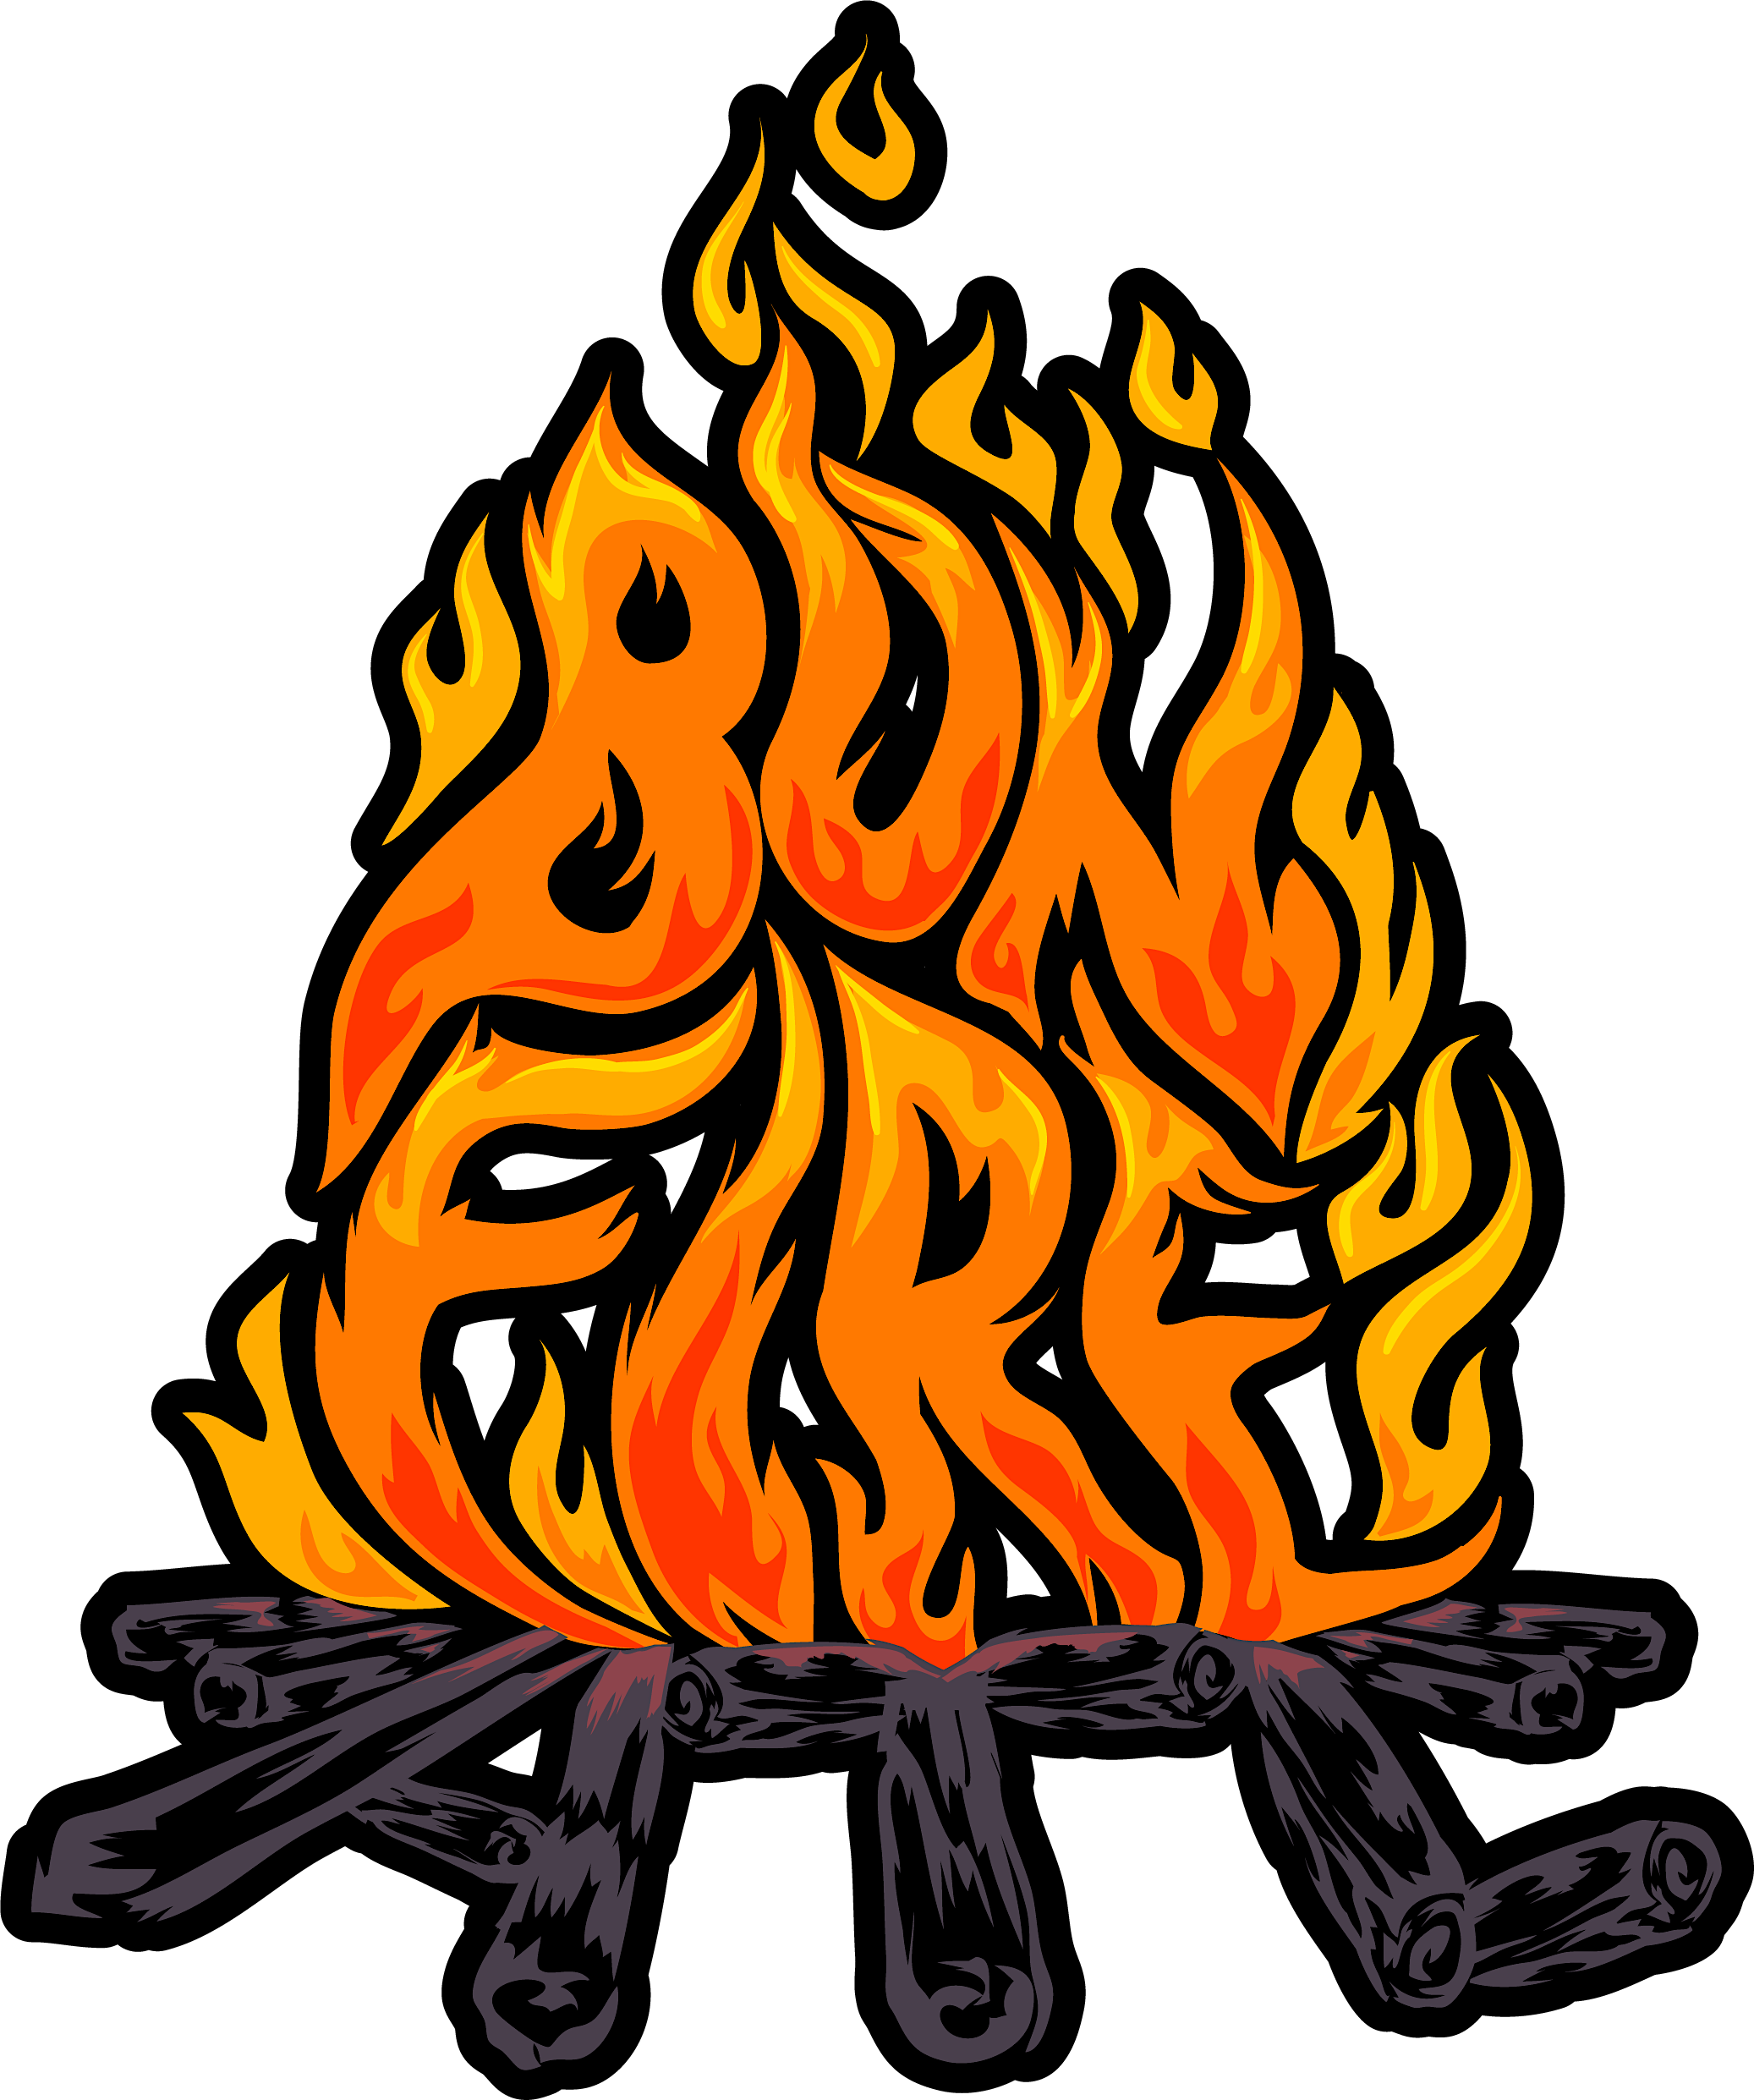 Bonfire ATL